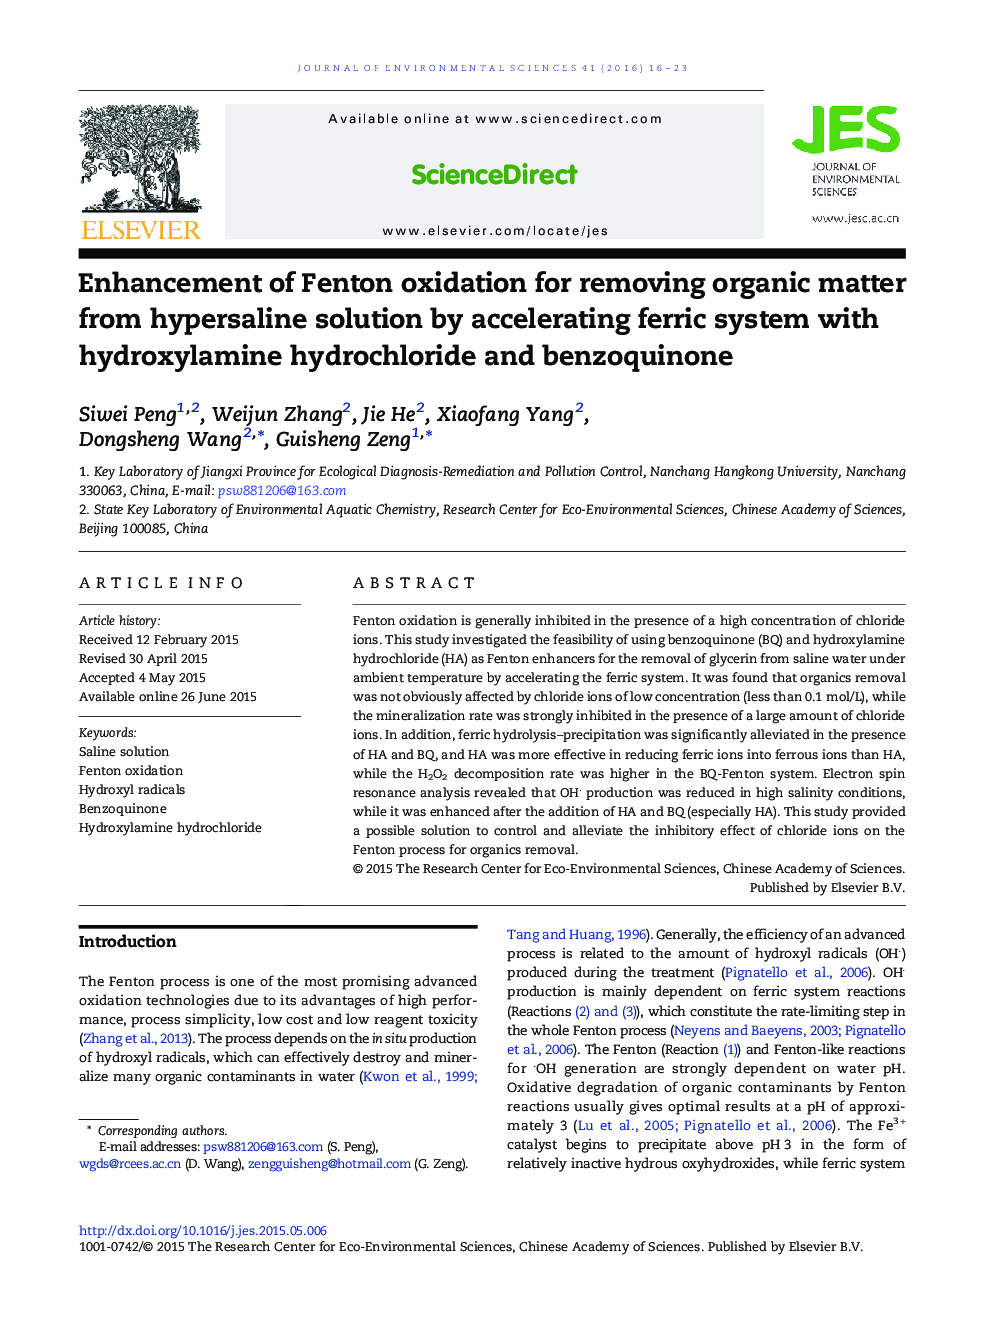 افزایش اکسیداسیون فنتون برای حذف مواد آلی از محلول هیپسرولین با شتاب دادن سیستم فراری با هیدروکسیلامین هیدروکلراید و بنزووینون 